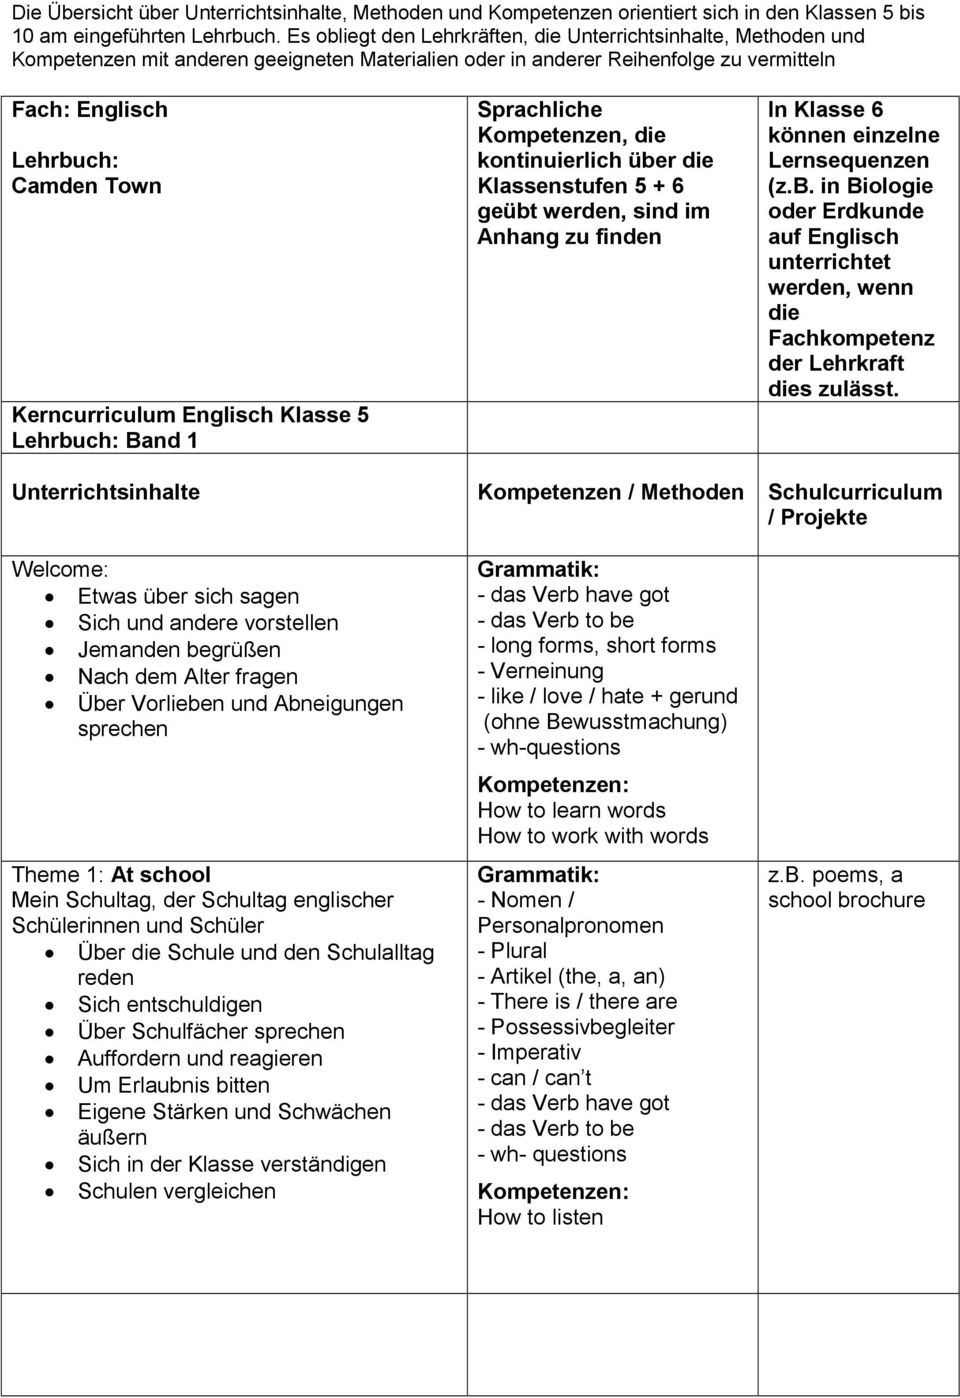 Kerncurriculum Englisch Klasse 5 Lehrbuch: Band 1 Sprachliche Kompetenzen, die kontinuierlich über die Klassenstufen 5 + 6 geübt werden, sind im Anhang zu finden In Klasse 6 können einzelne